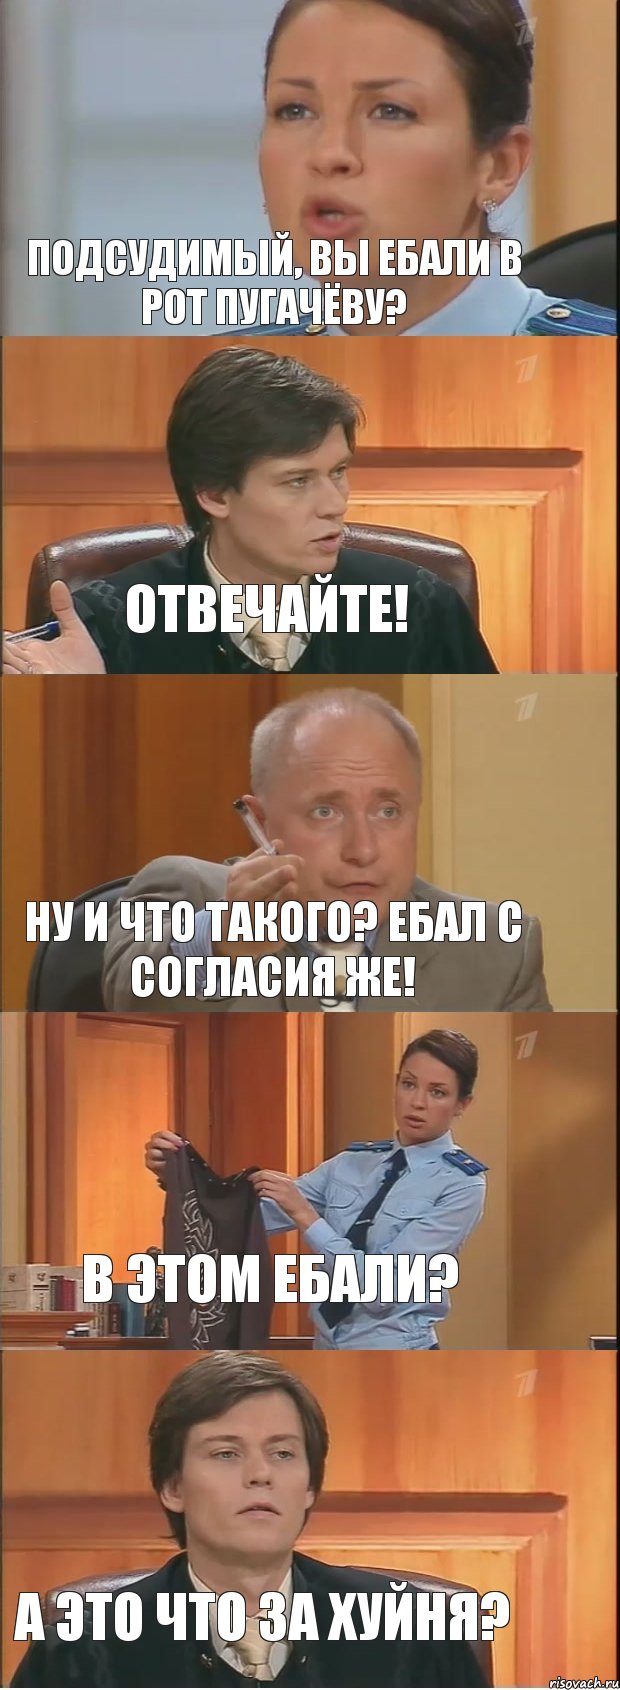 Подсудимый, вы ебали в рот Пугачёву? Отвечайте! Ну и что такого? Ебал с согласия же! В этом ебали? А это что за хуйня?